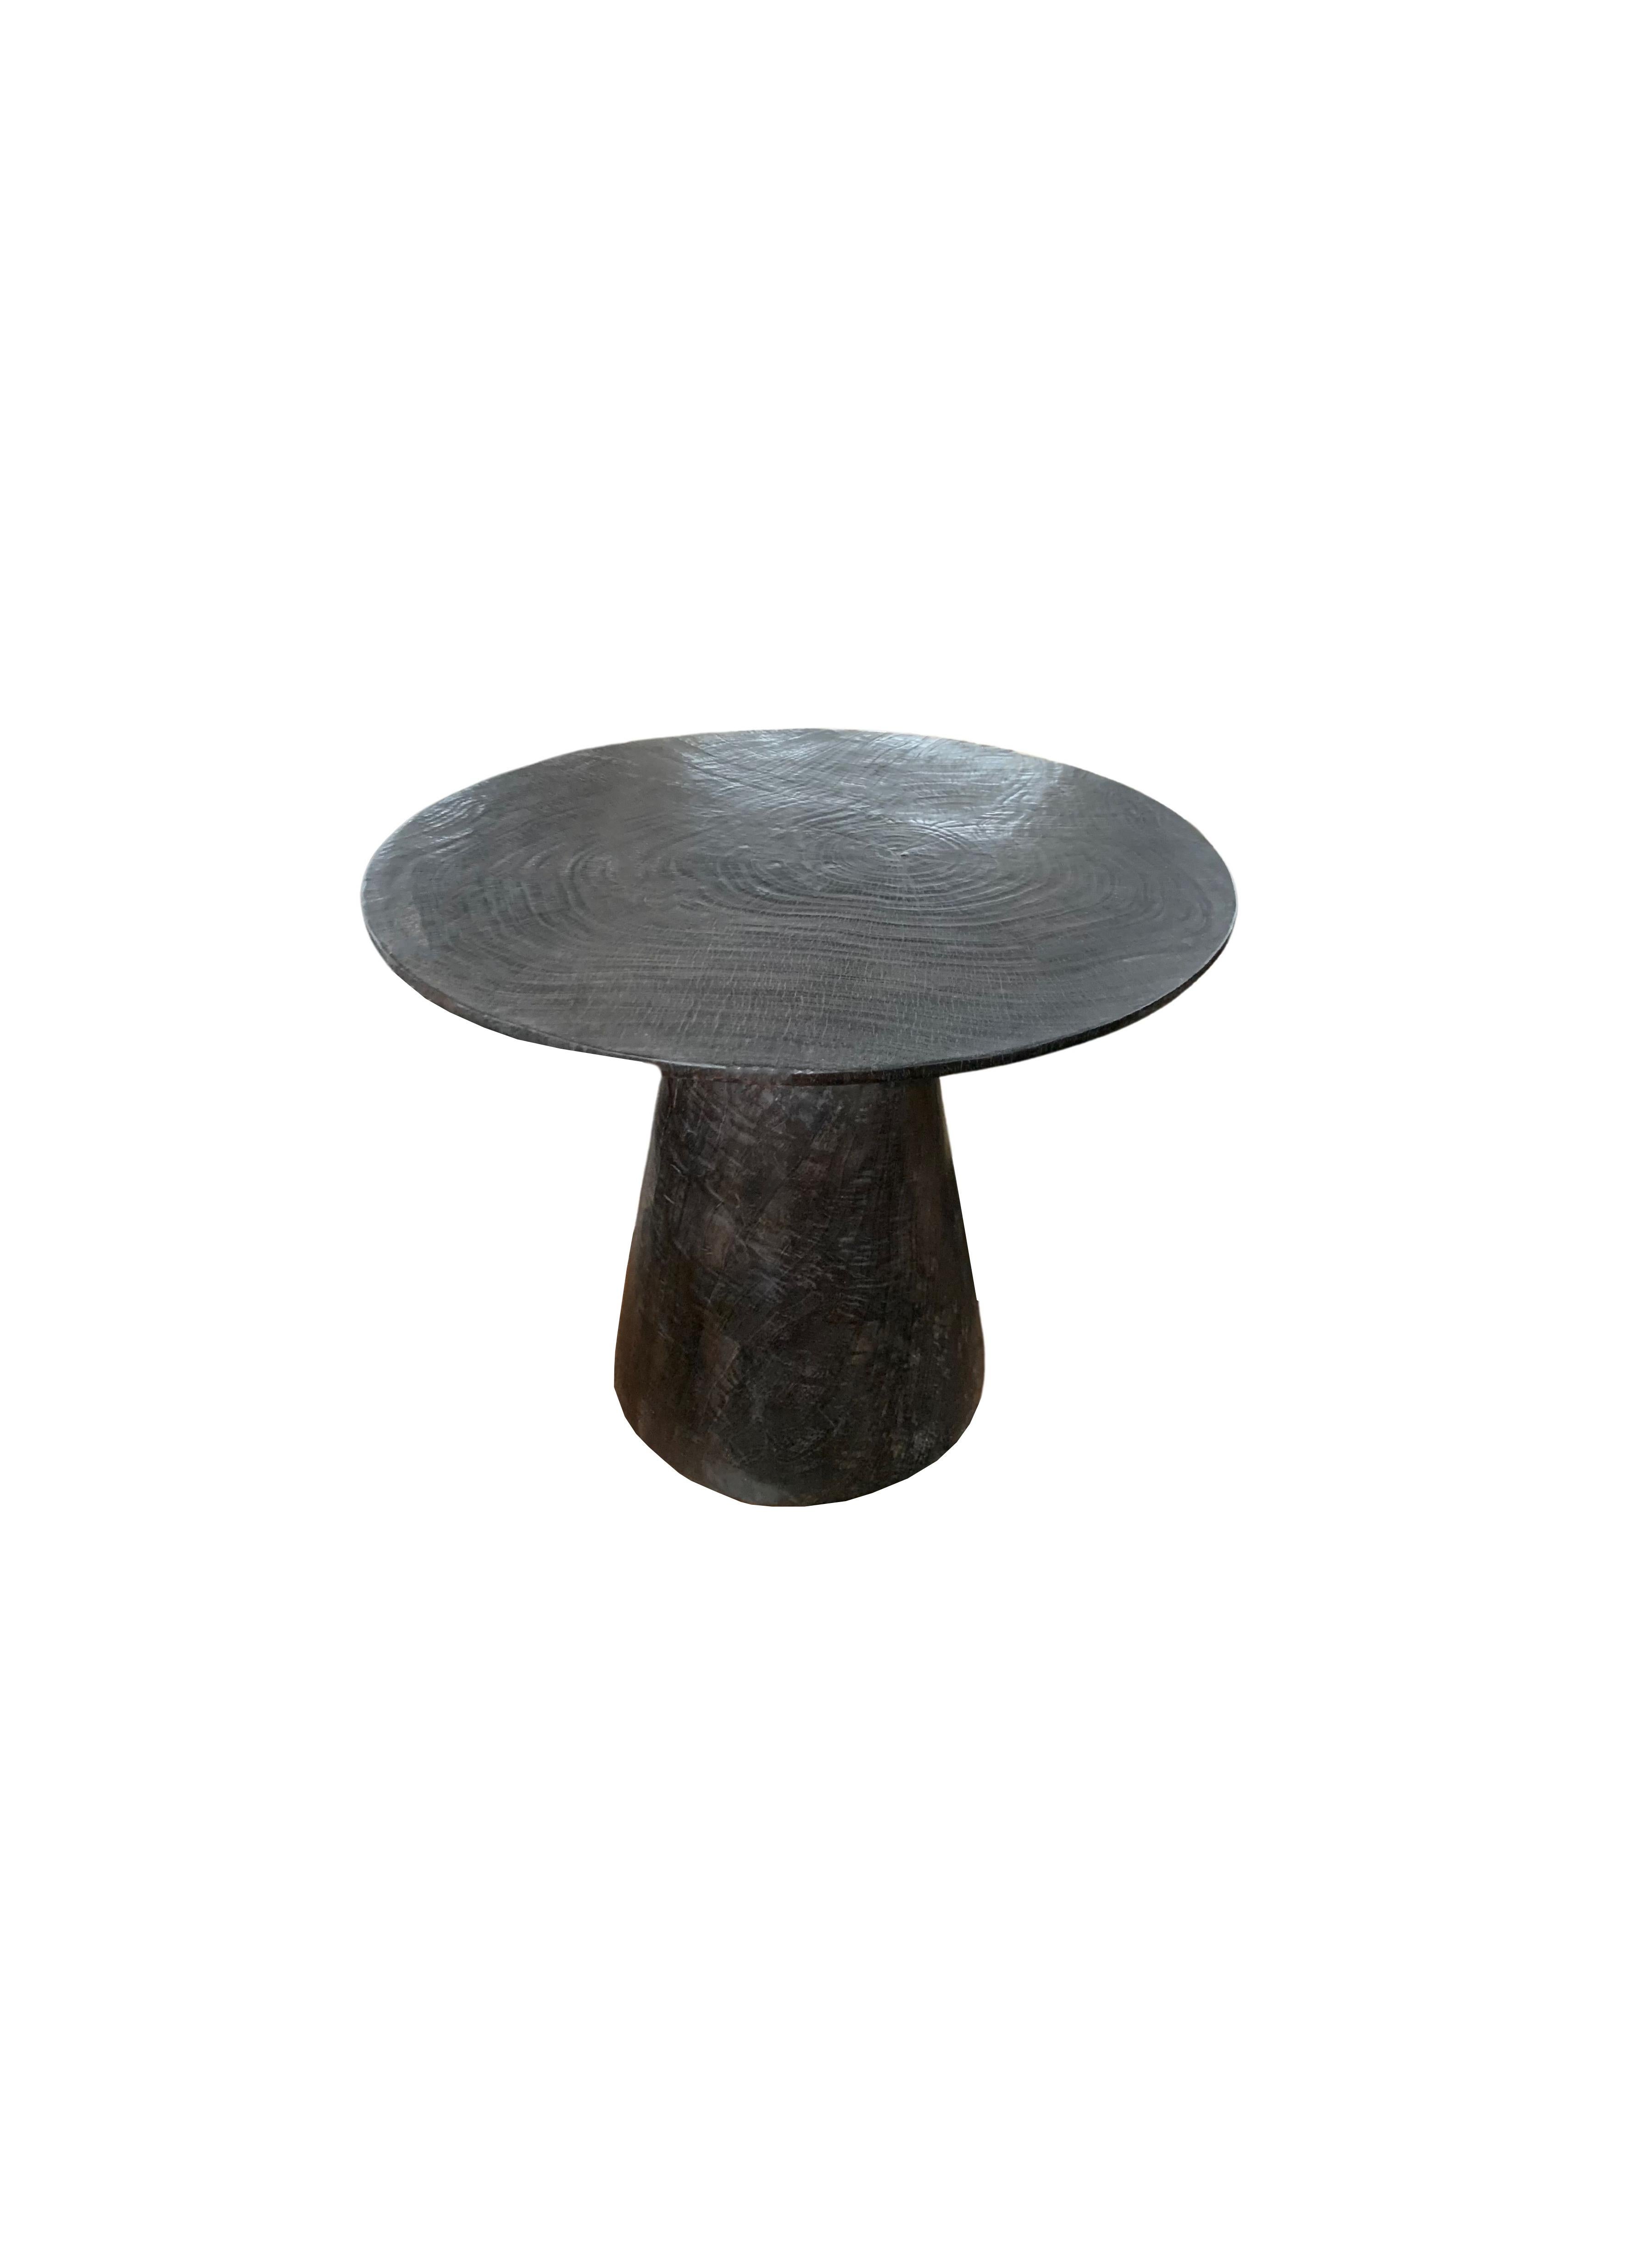 Une table d'appoint ronde merveilleusement sculpturale avec une finition brûlée. Pour obtenir son pigment sombre, le bois a été brûlé à de nombreuses reprises, poncé et recouvert d'une couche transparente. Son pigment neutre et sa texture boisée